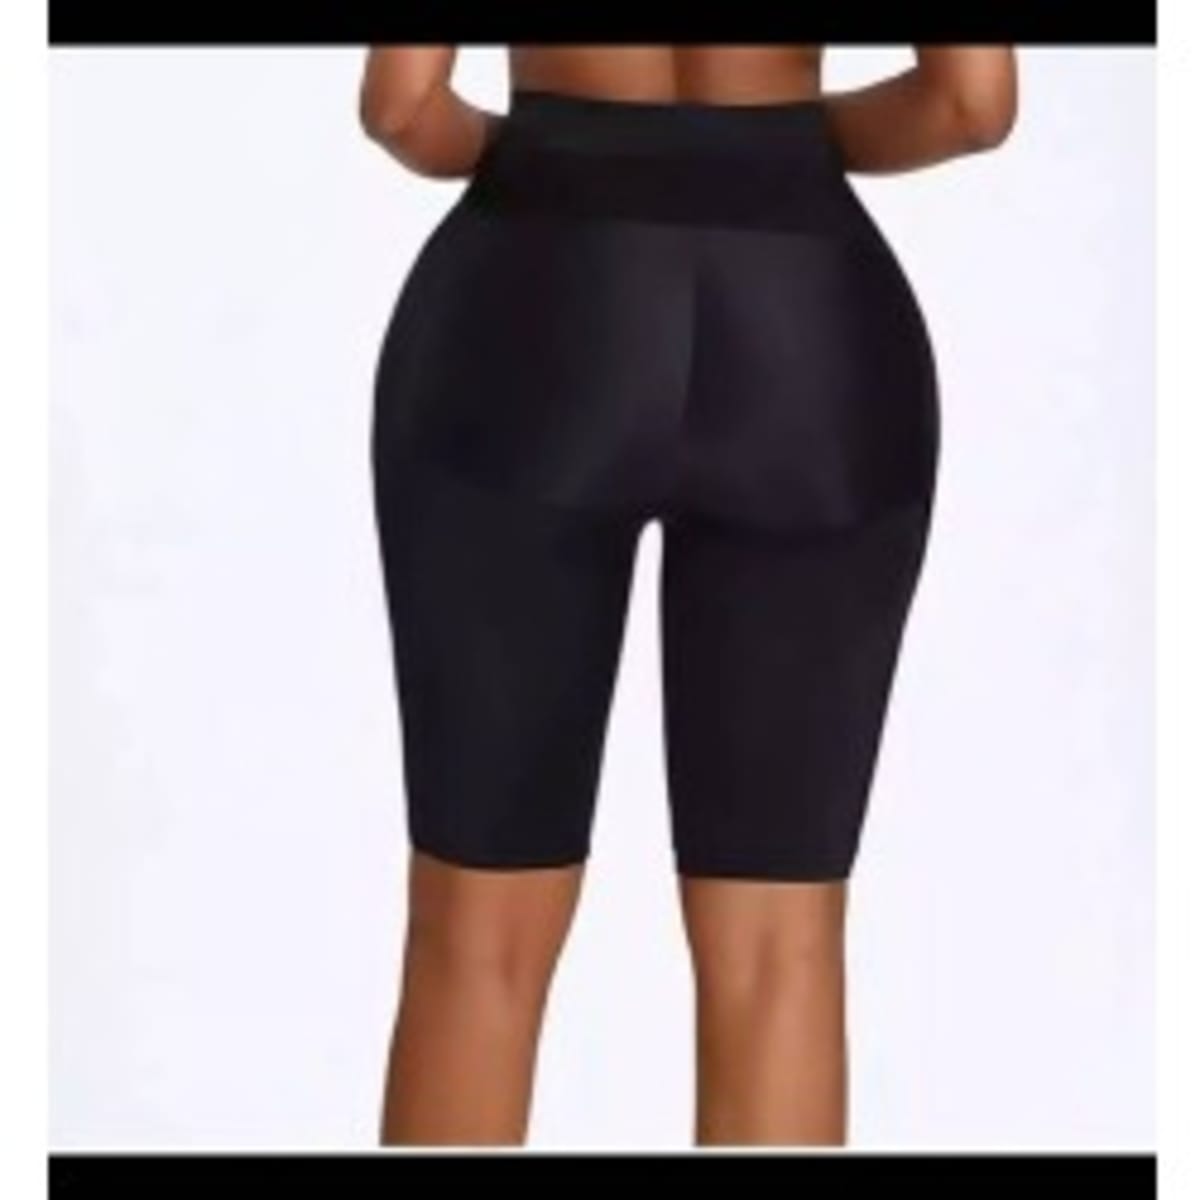 Seamless Butt Padded Shorts Shapewear - black